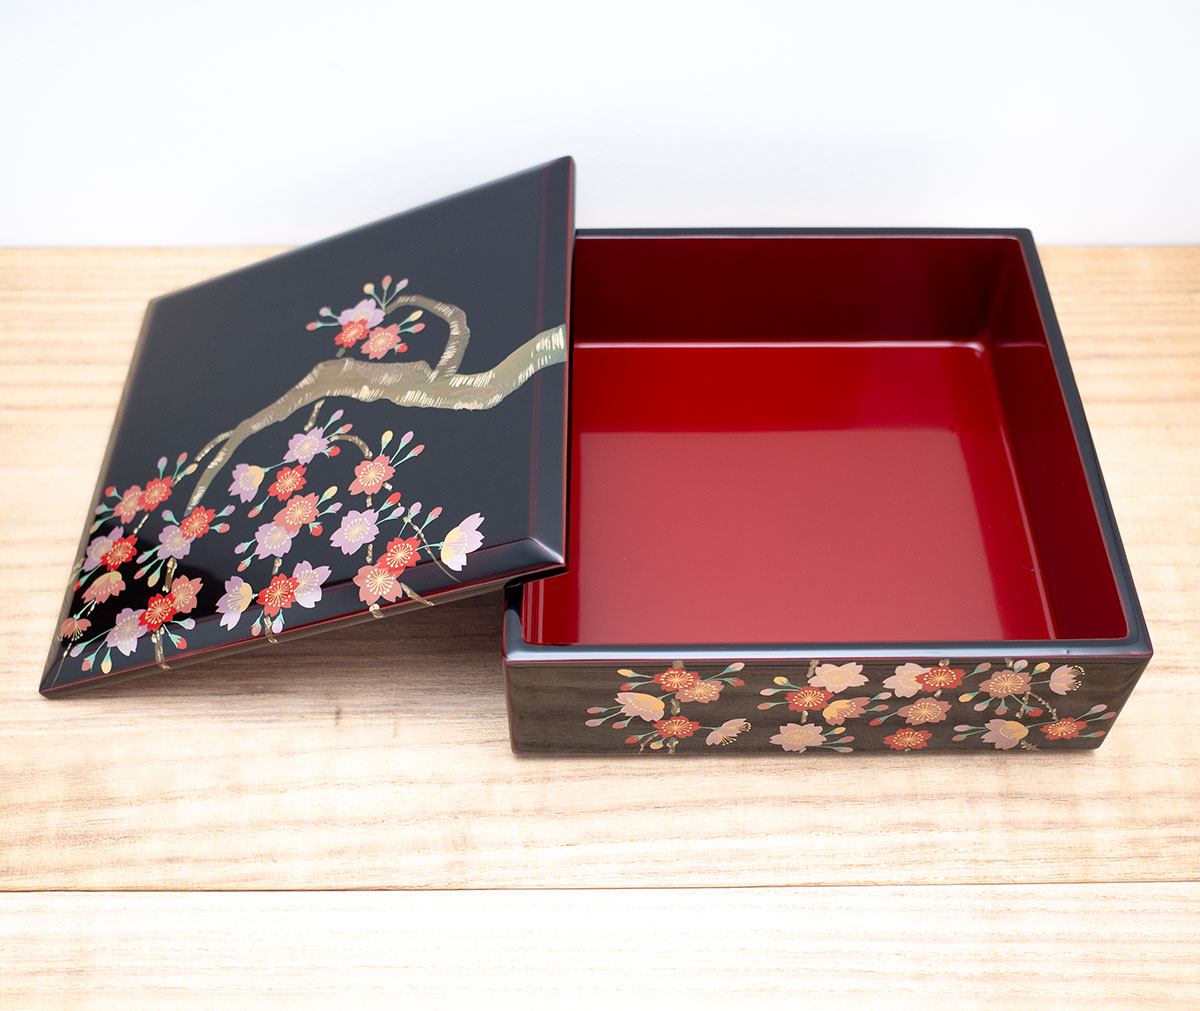 ちょっと早いですが、お正月に向けておせち用に、豪華な枝垂れ桜の蒔絵が施された重箱を準備してみては。